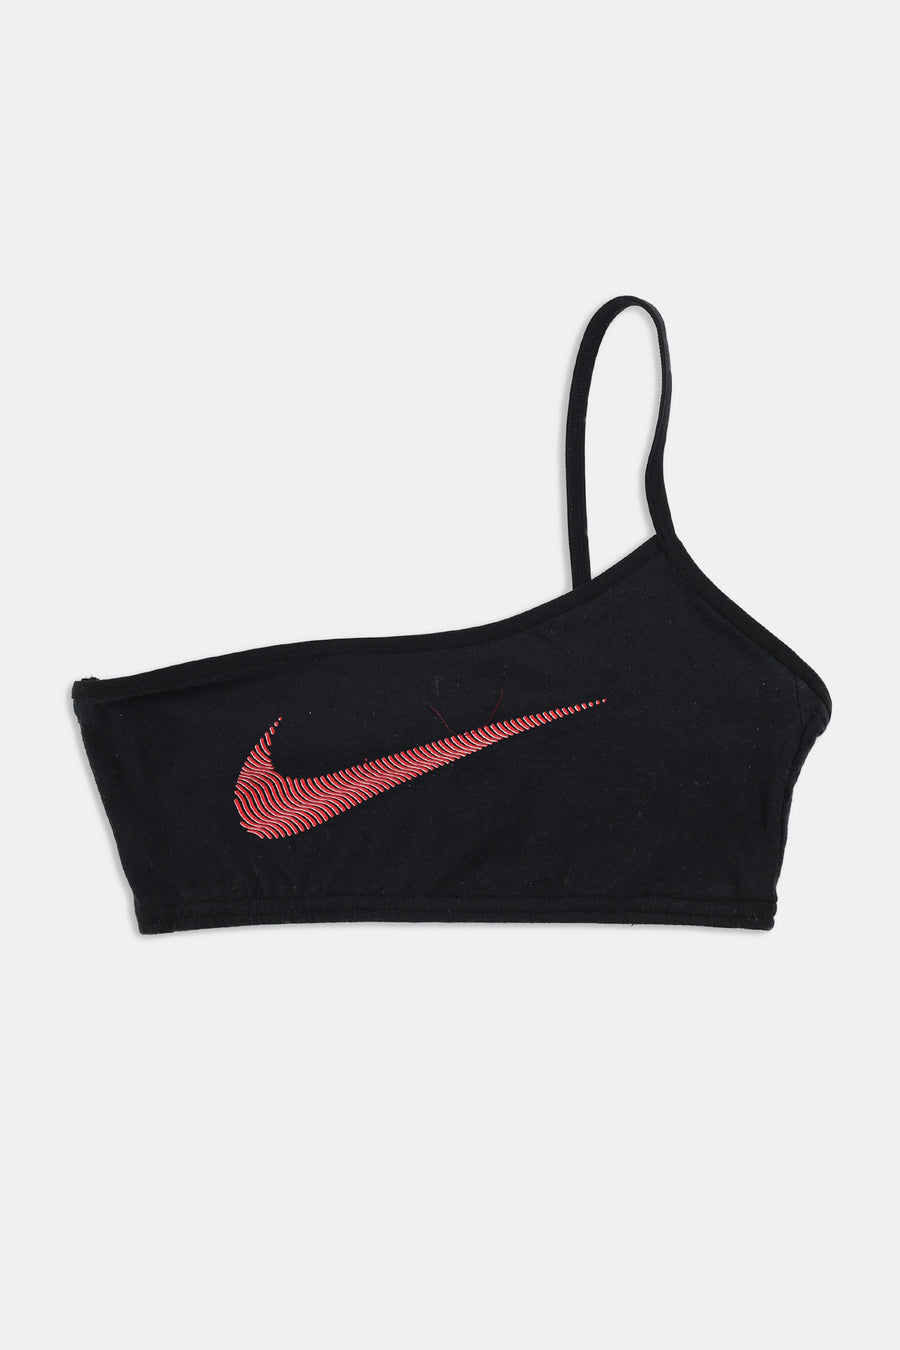 Rework Nike One Shoulder Bra Top - L – Frankie Collective